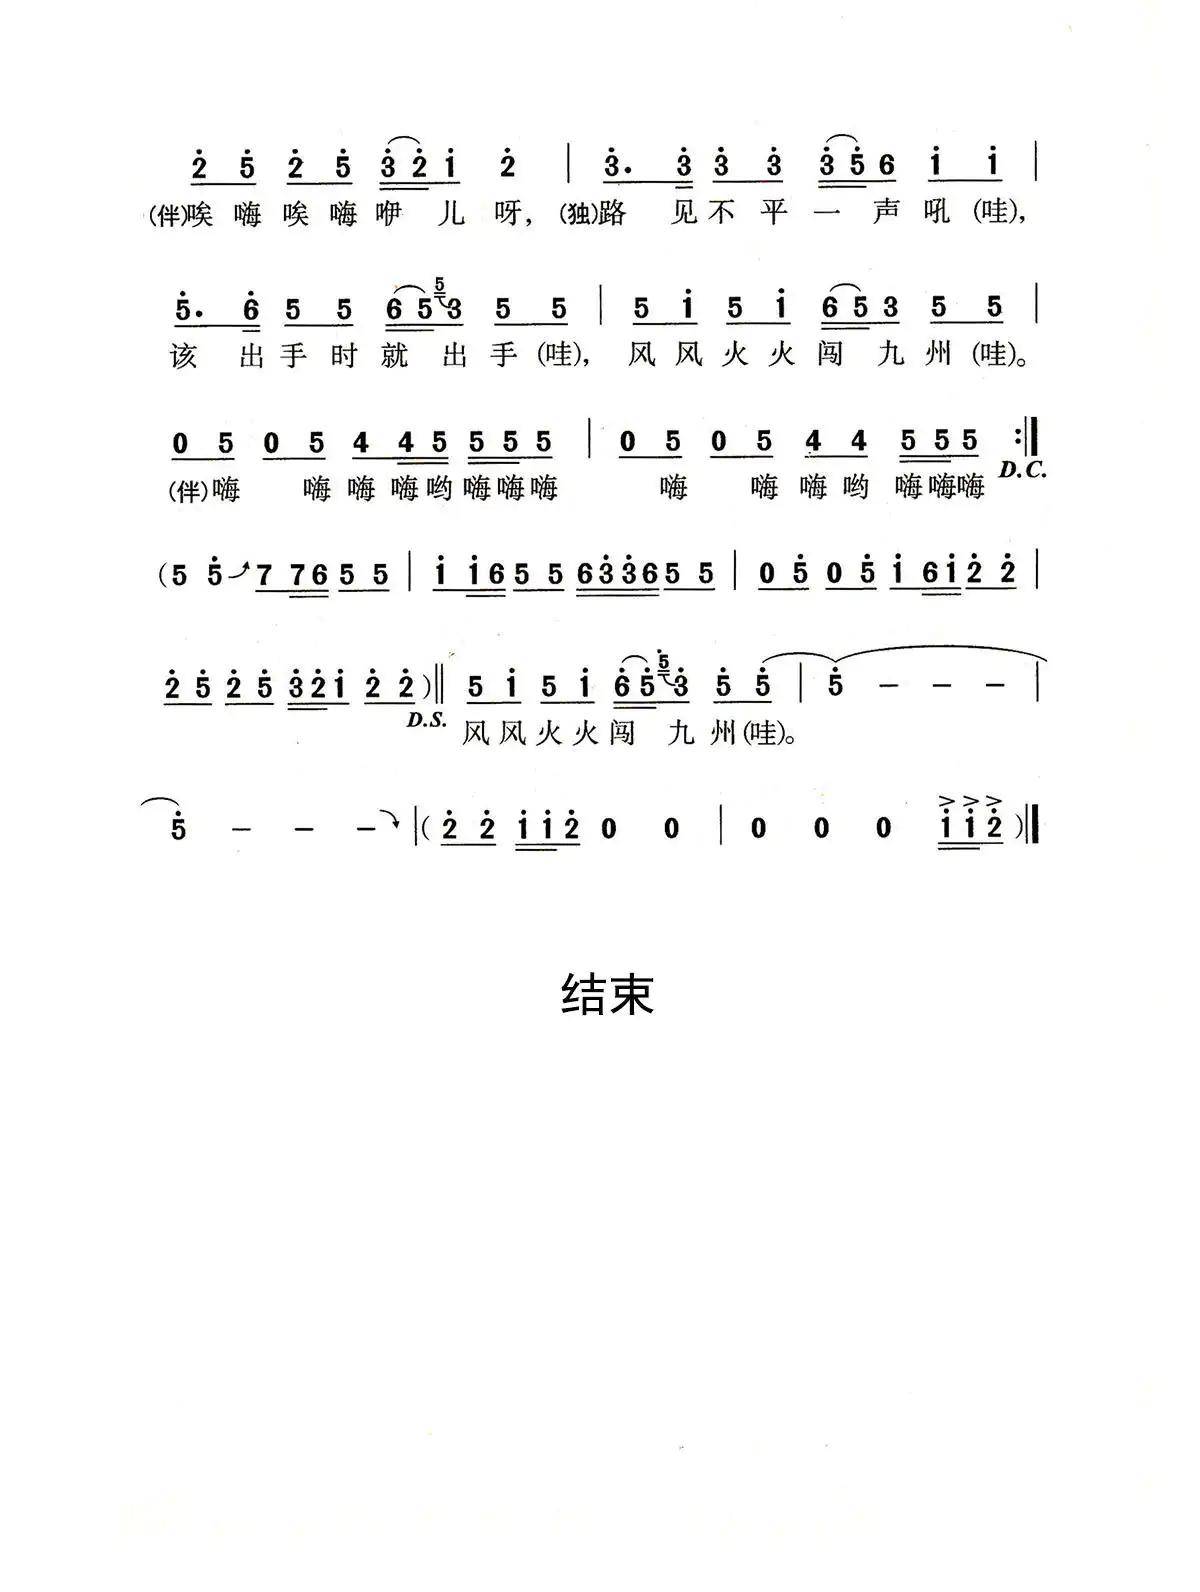 好汉歌-水浒传主题曲双手简谱预览1-钢琴谱文件（五线谱、双手简谱、数字谱、Midi、PDF）免费下载